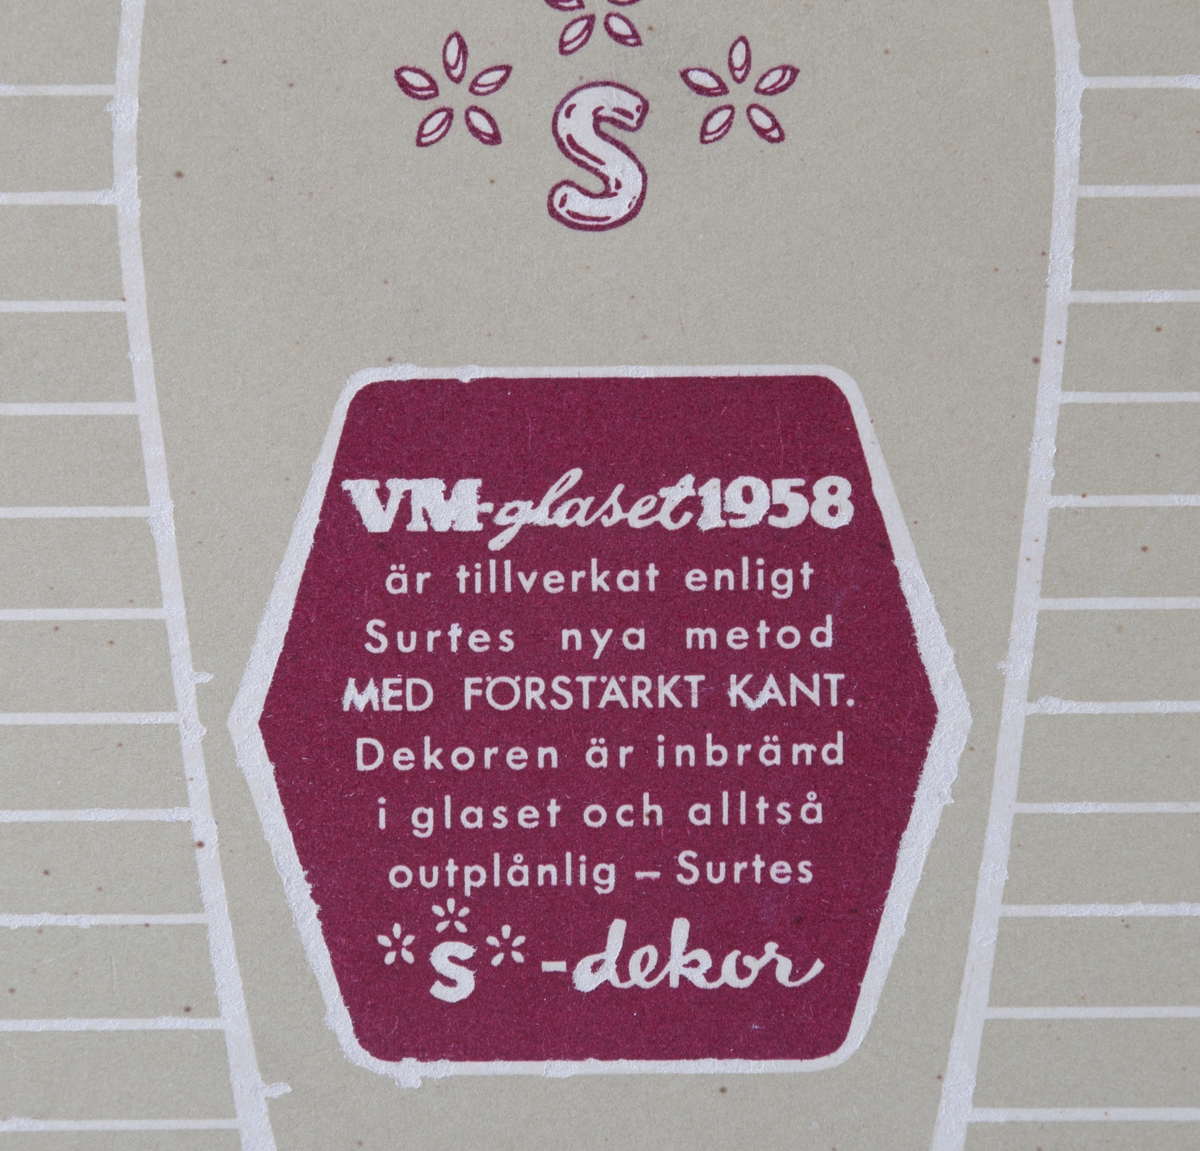 Dricksglas, tre stycken i en originalkartong med tryck och information om "S-dekor" på baksidan. Tillverkade för VM i fotboll 1958. Varje glas har en guldkant och texten; "VM 1958" i vitt, samt text "Sverige", "fotboll" och en fotbollsspelare i vardera färgen rött, blått och grönt.

Inskrivet i huvudkatalogen 1958.